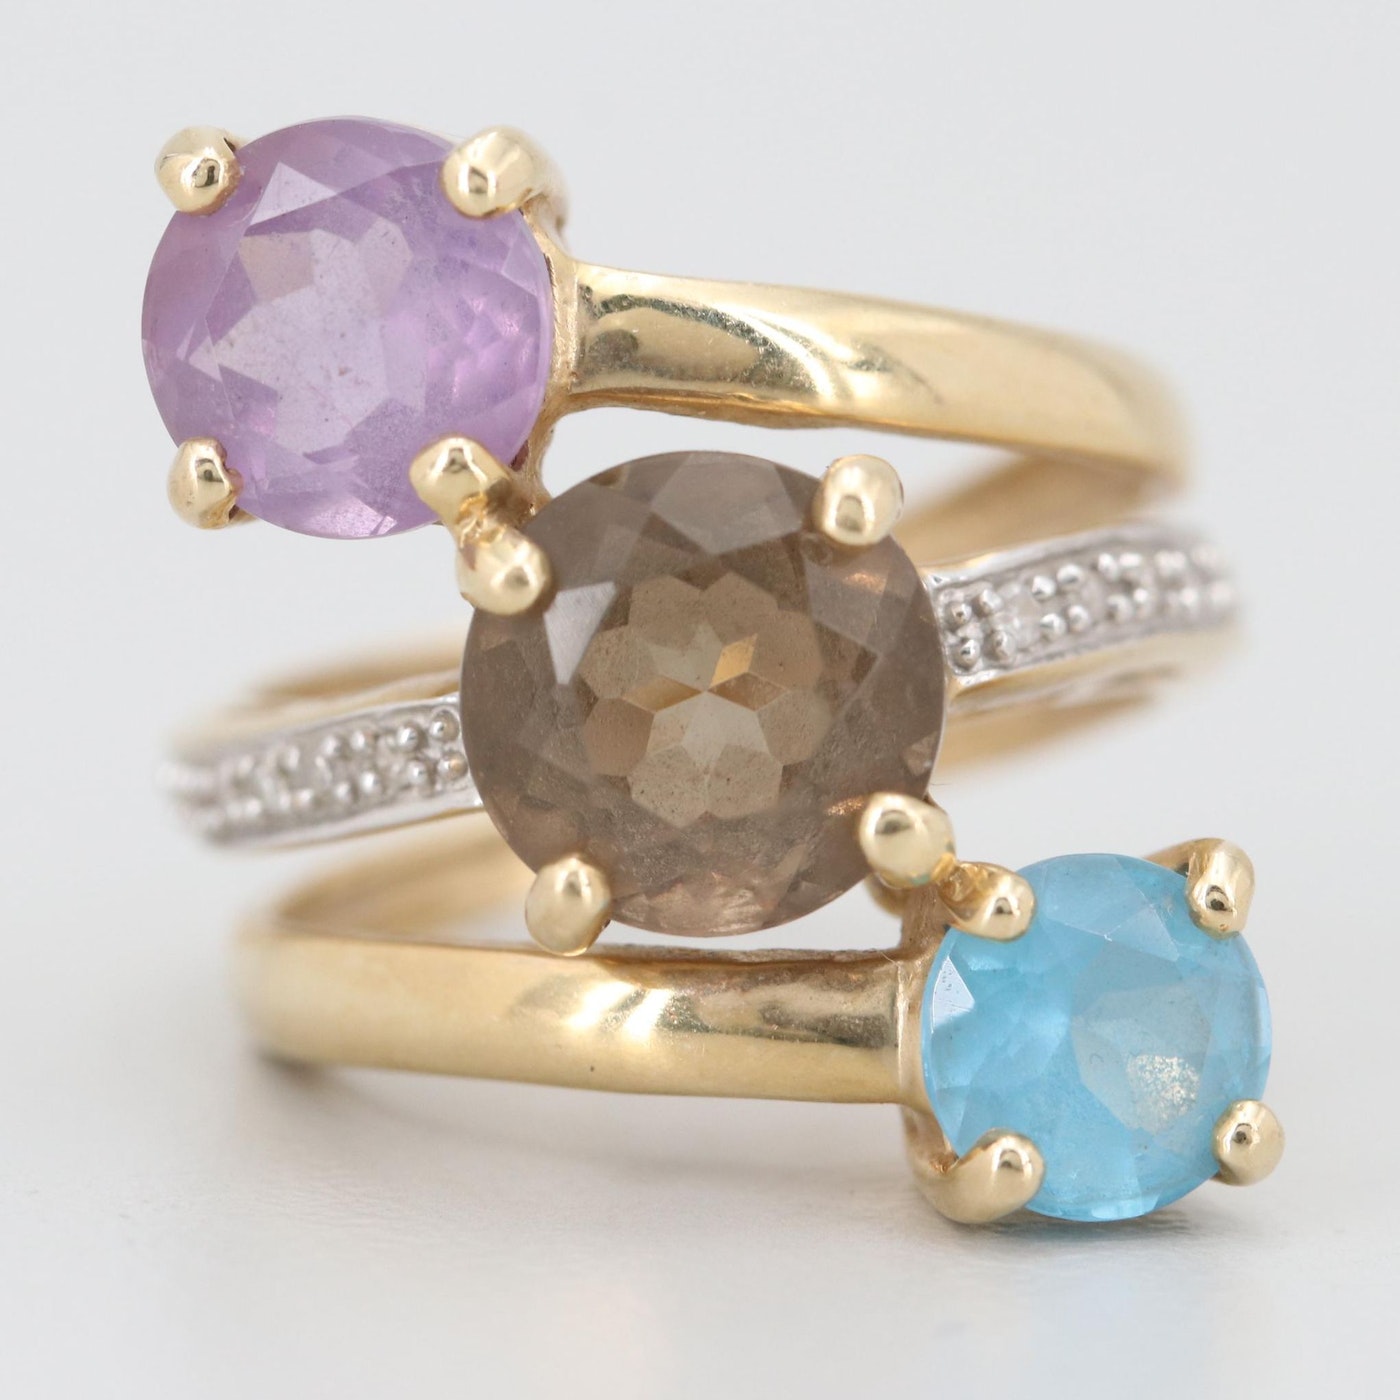 14K Yellow Gold Diamond and Three Gemstone Ring with Pavé Diamonds